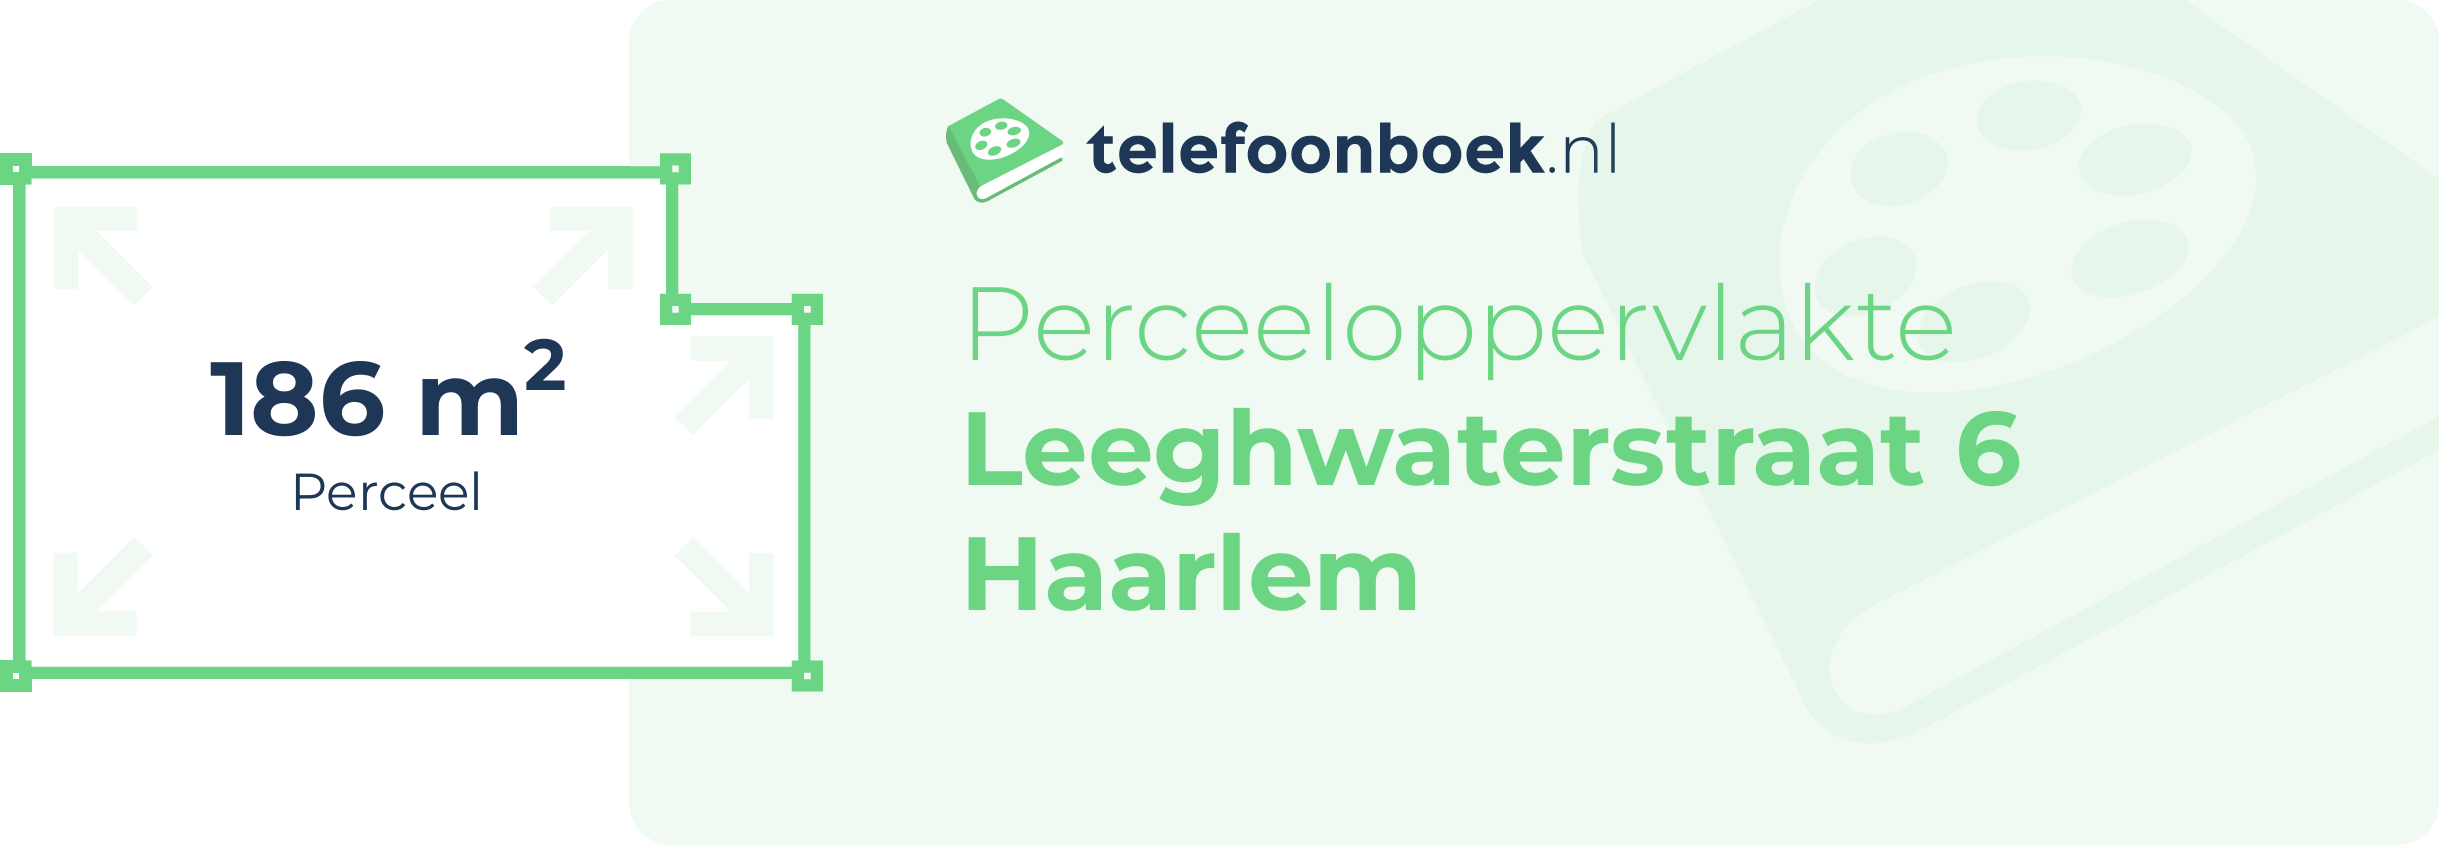 Perceeloppervlakte Leeghwaterstraat 6 Haarlem